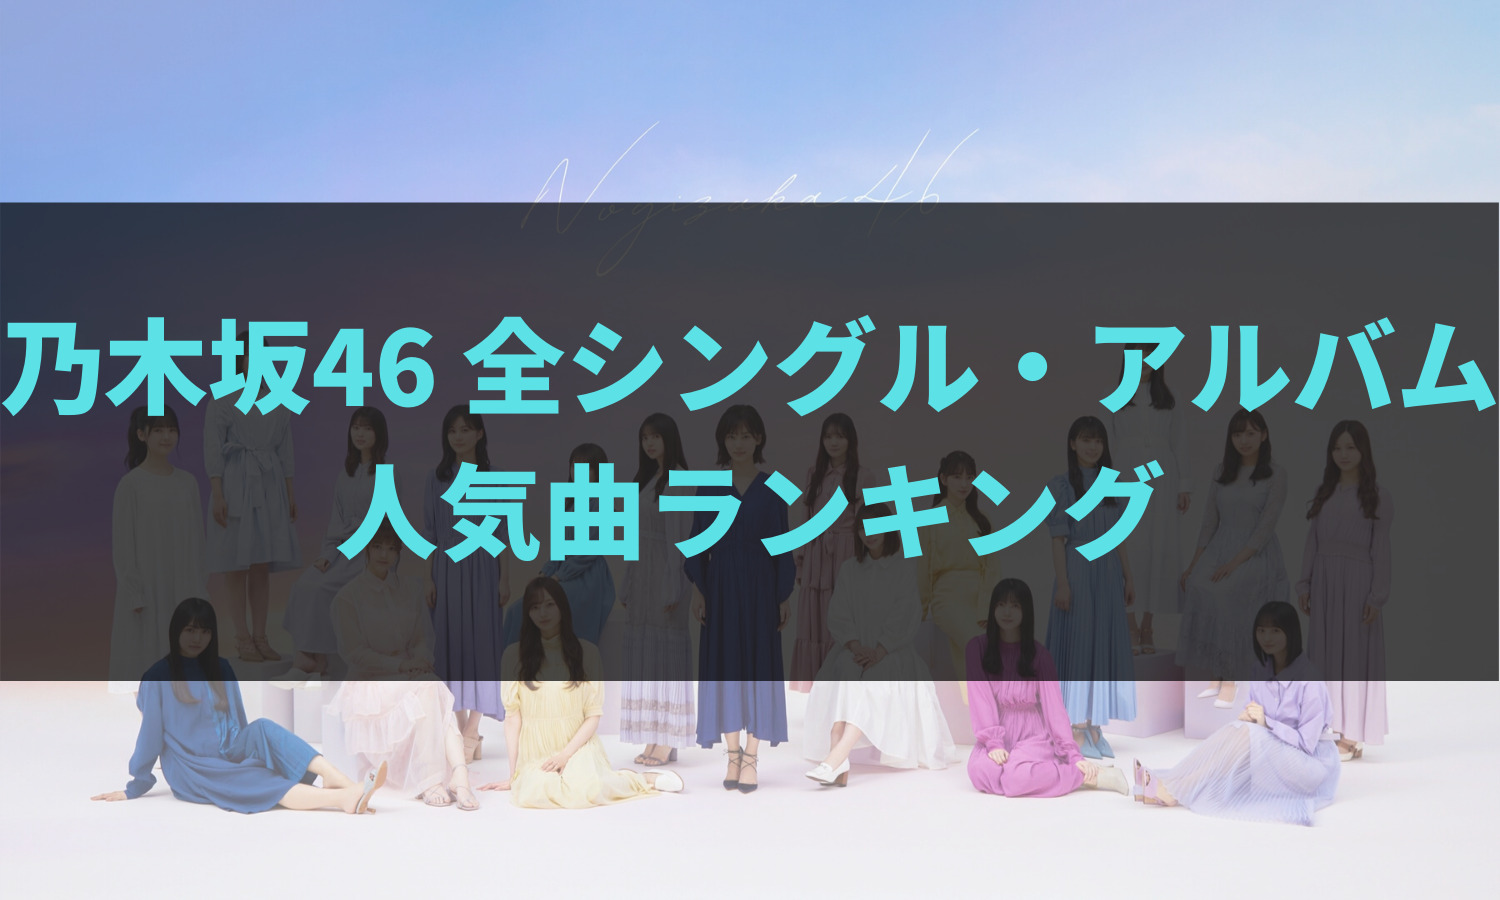 乃木坂46 全楽曲ランキング アイキャッチ